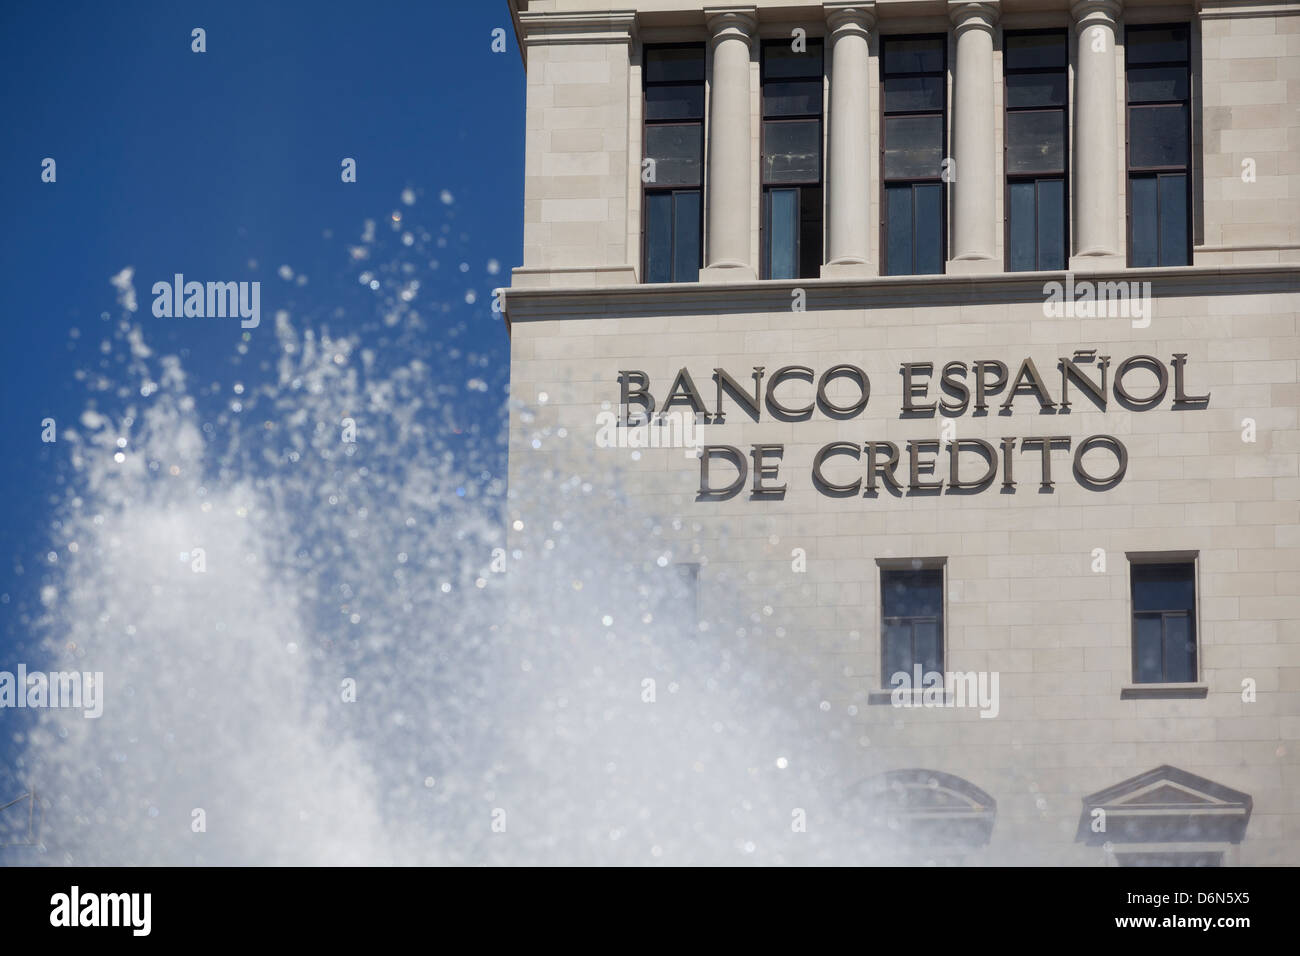 Barcelona, Spain, Banco Espanol de Credito facade Stock Photo